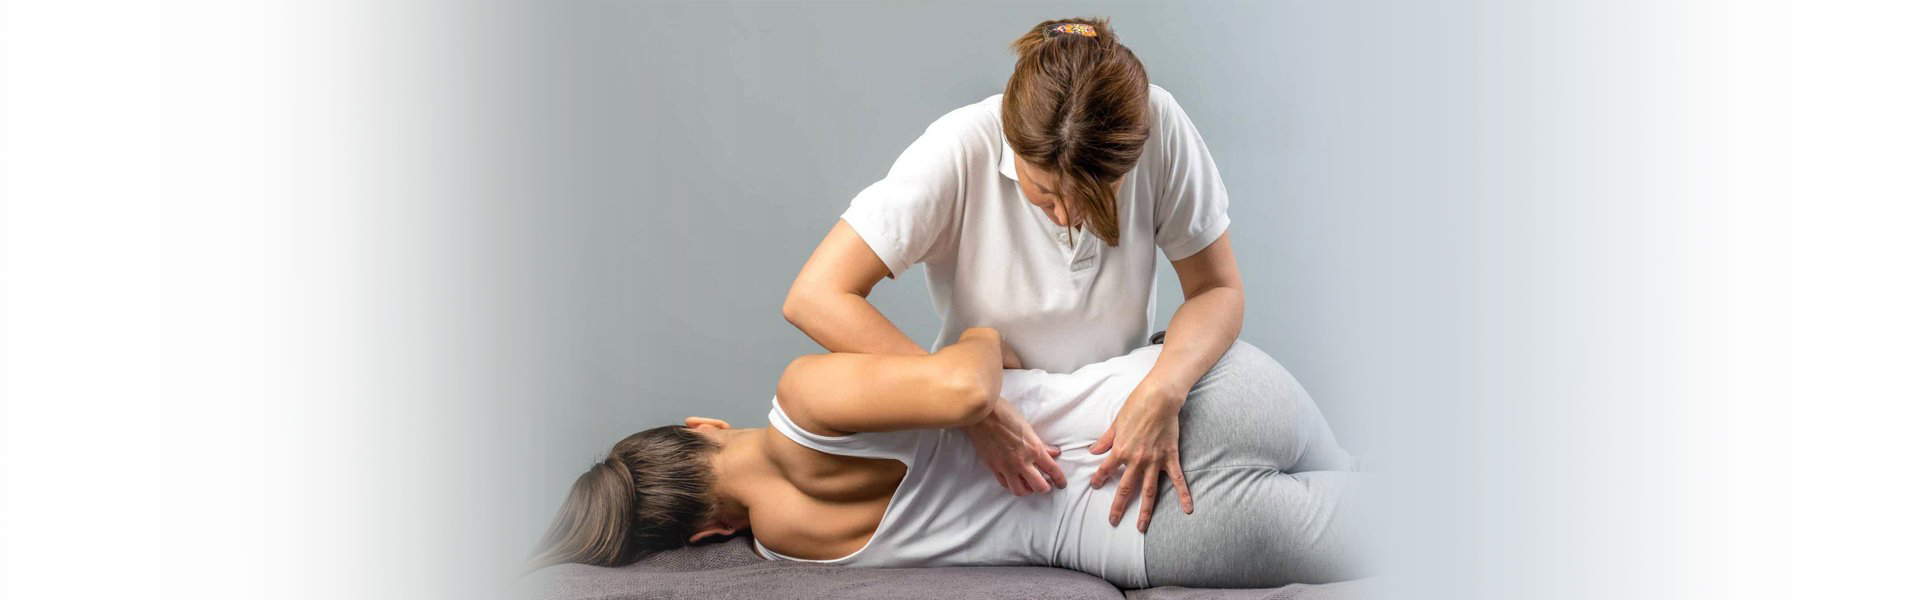 Lower Back Pain Treatment in Seattle / Bellevue